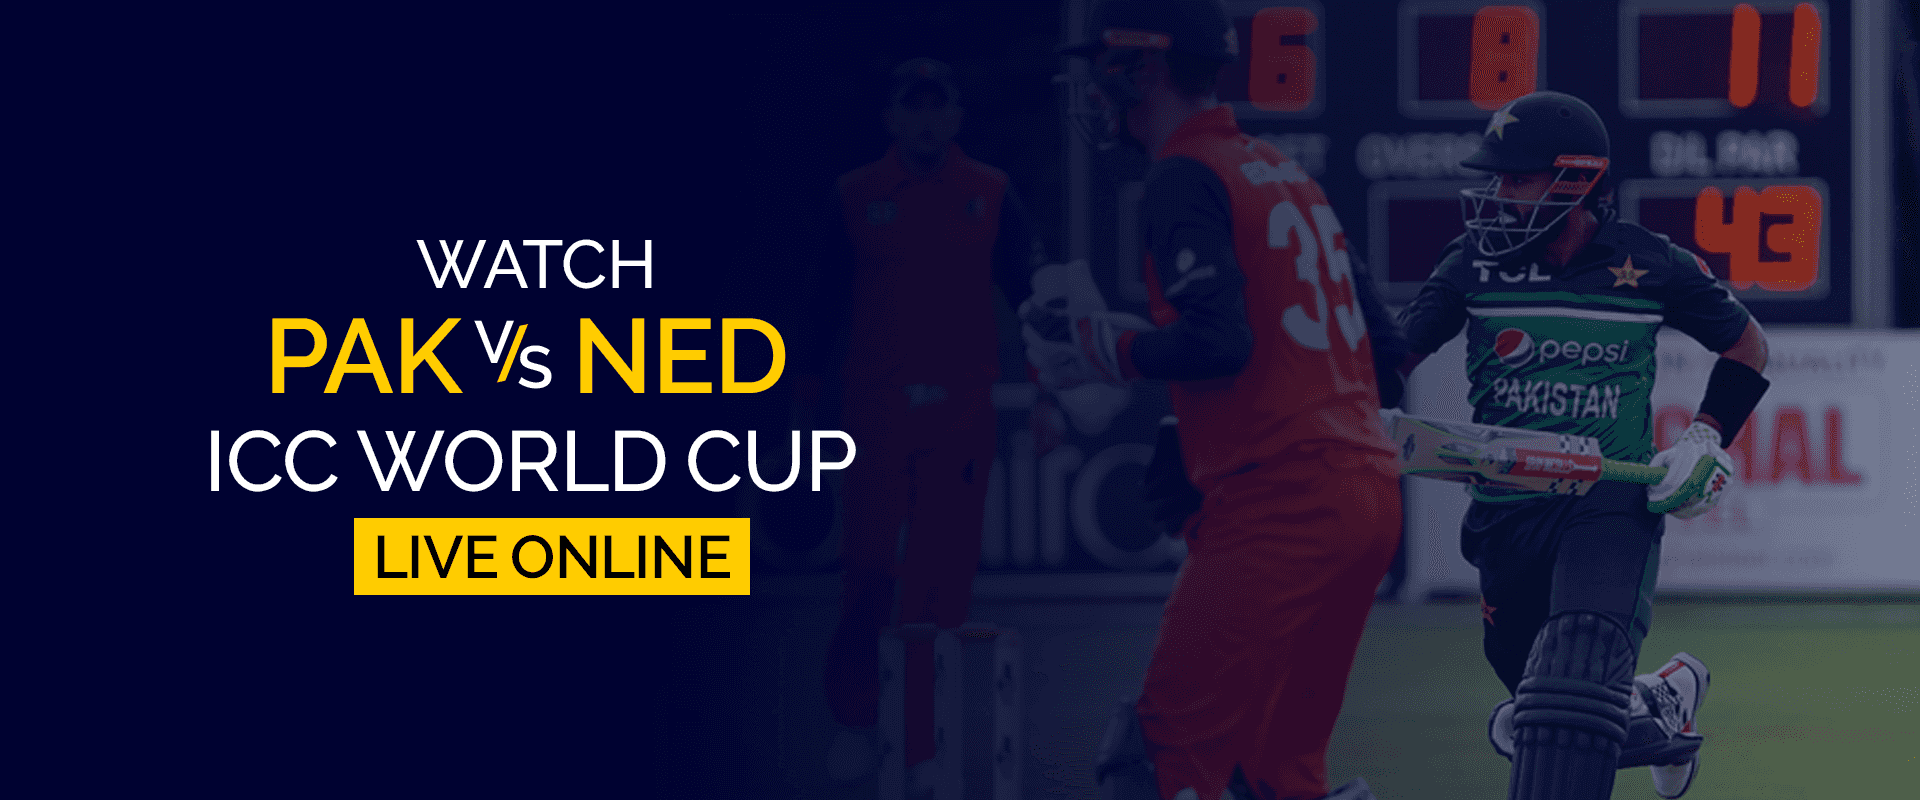 Bekijk PAK vs NED ICC World Cup live online